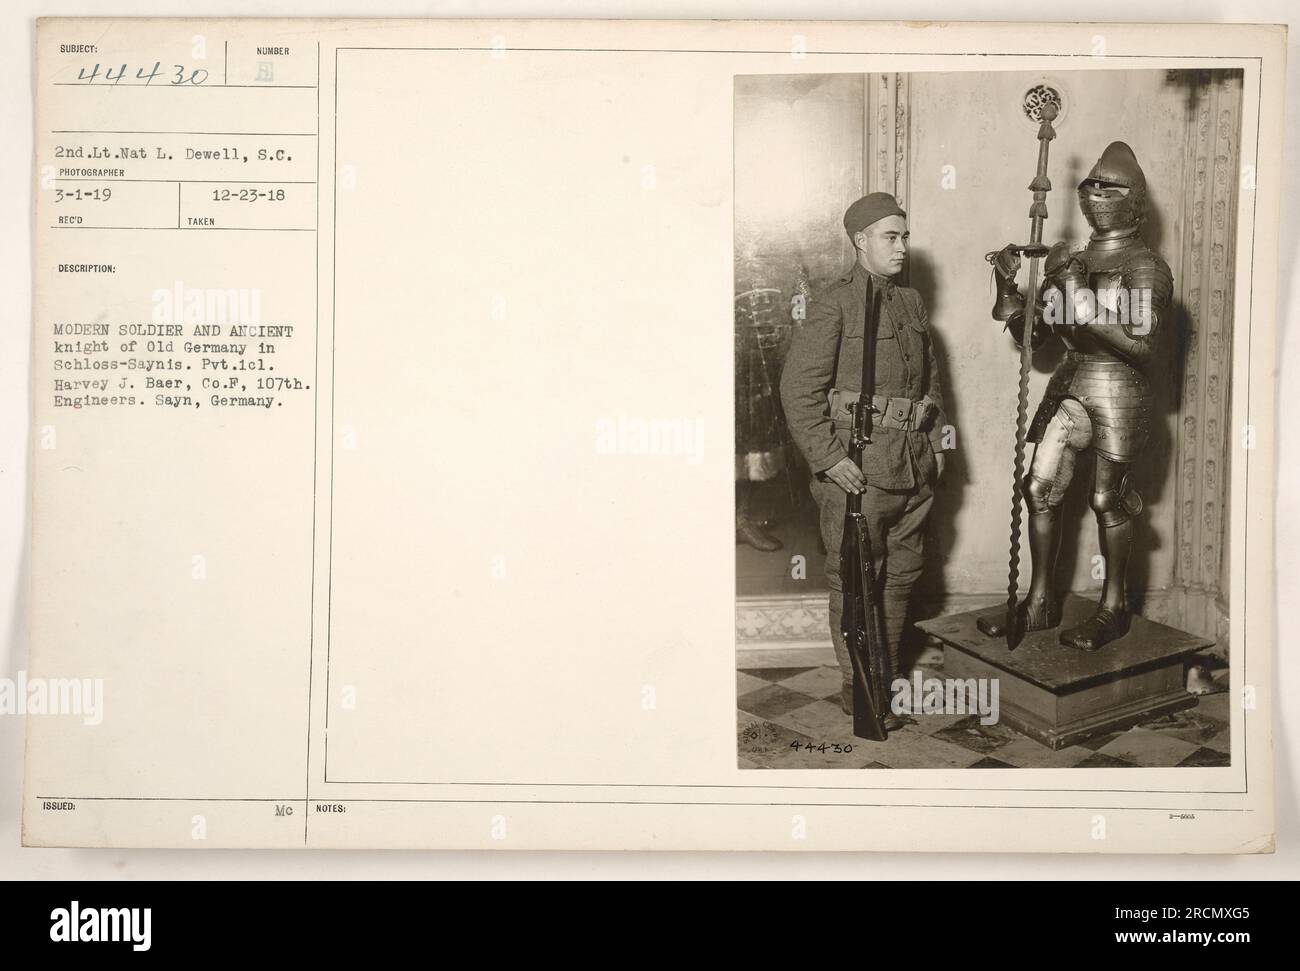 Gefreiter Harvey J. Baer von Co F, 107. Ingenieure, fotografiert in Schloss-Saynis in Sayn, Deutschland. Das Bild zeigt einen Vergleich zwischen einem modernen amerikanischen Soldaten und einem alten Ritter des alten Deutschlands." Stockfoto